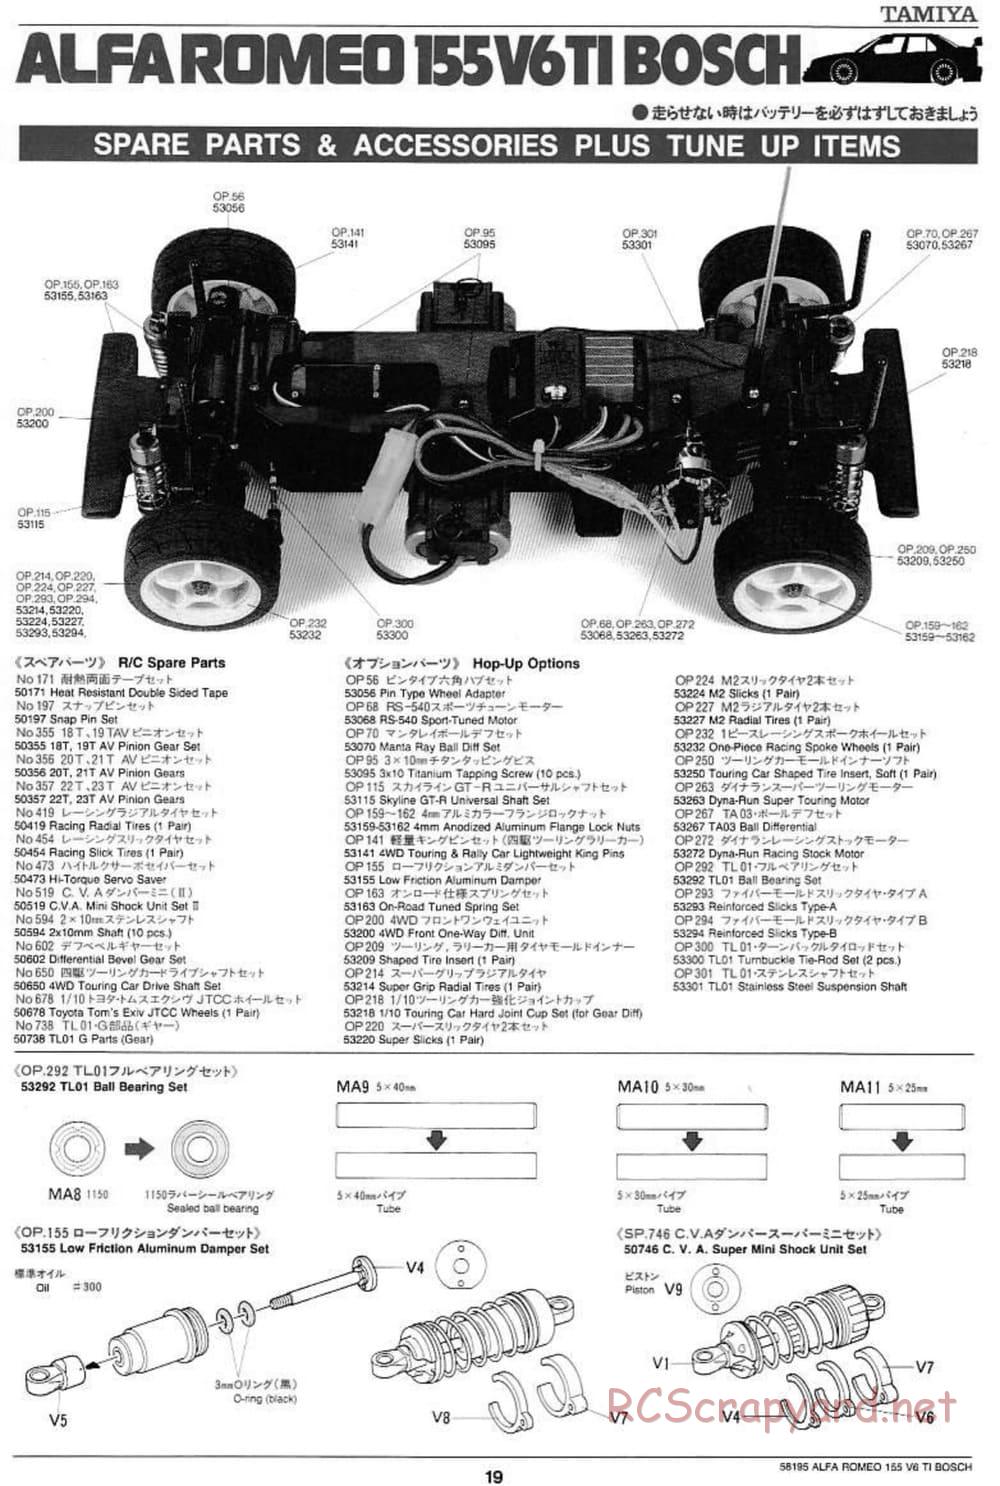 Tamiya - Alfa Romeo 155 V6 TI BOSCH - TL-01 Chassis - Manual - Page 19